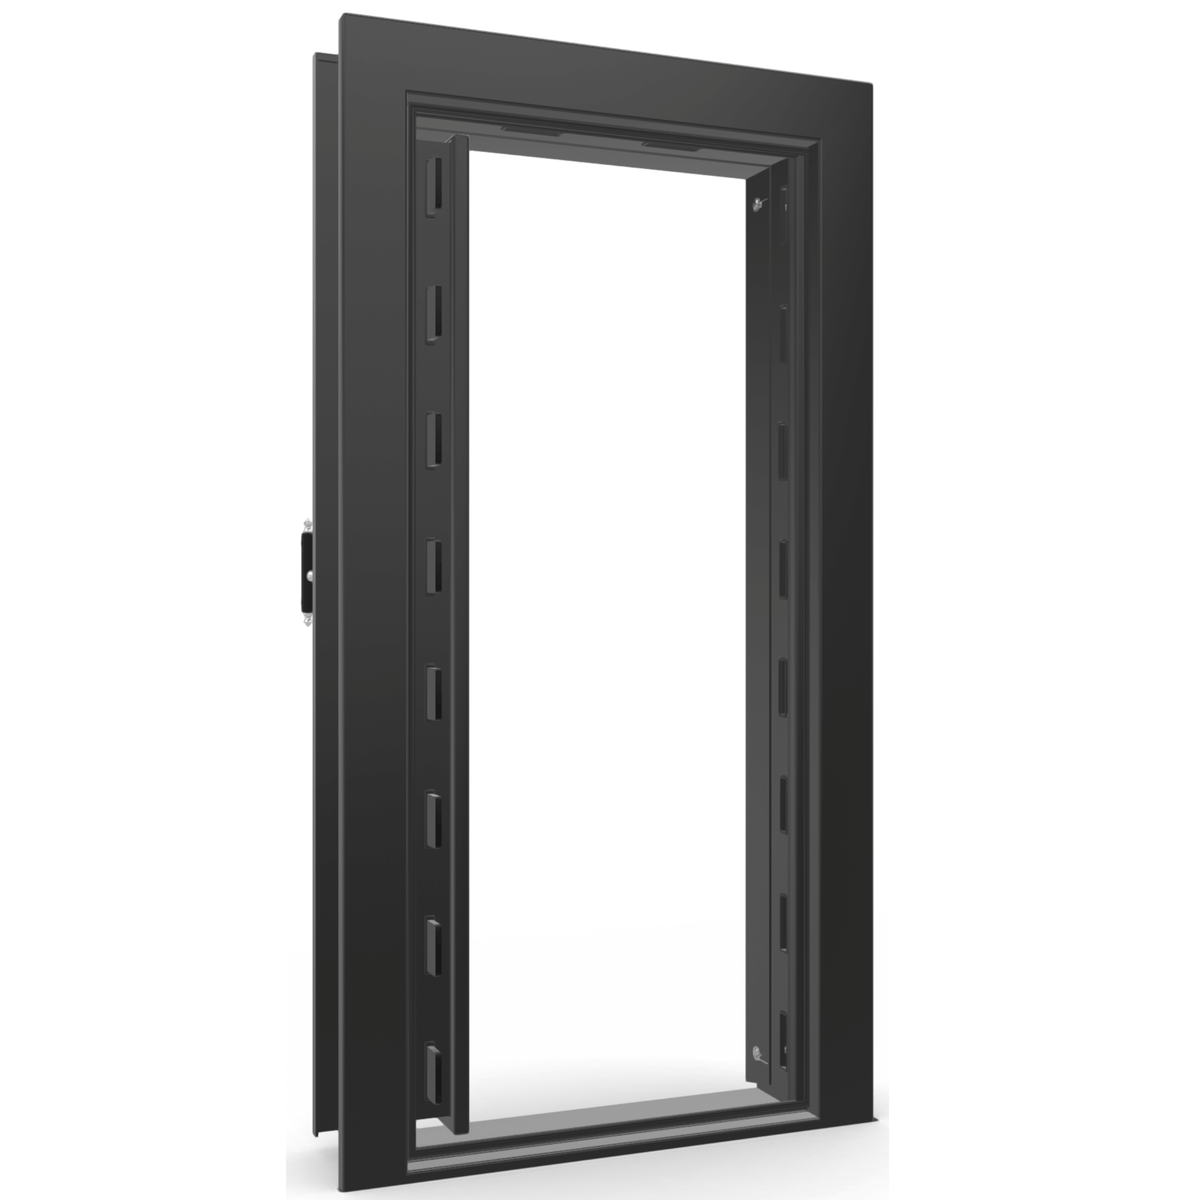 The Beast Vault Door in Black Gloss  with Chrome Electronic Lock, Left Inswing, door open.